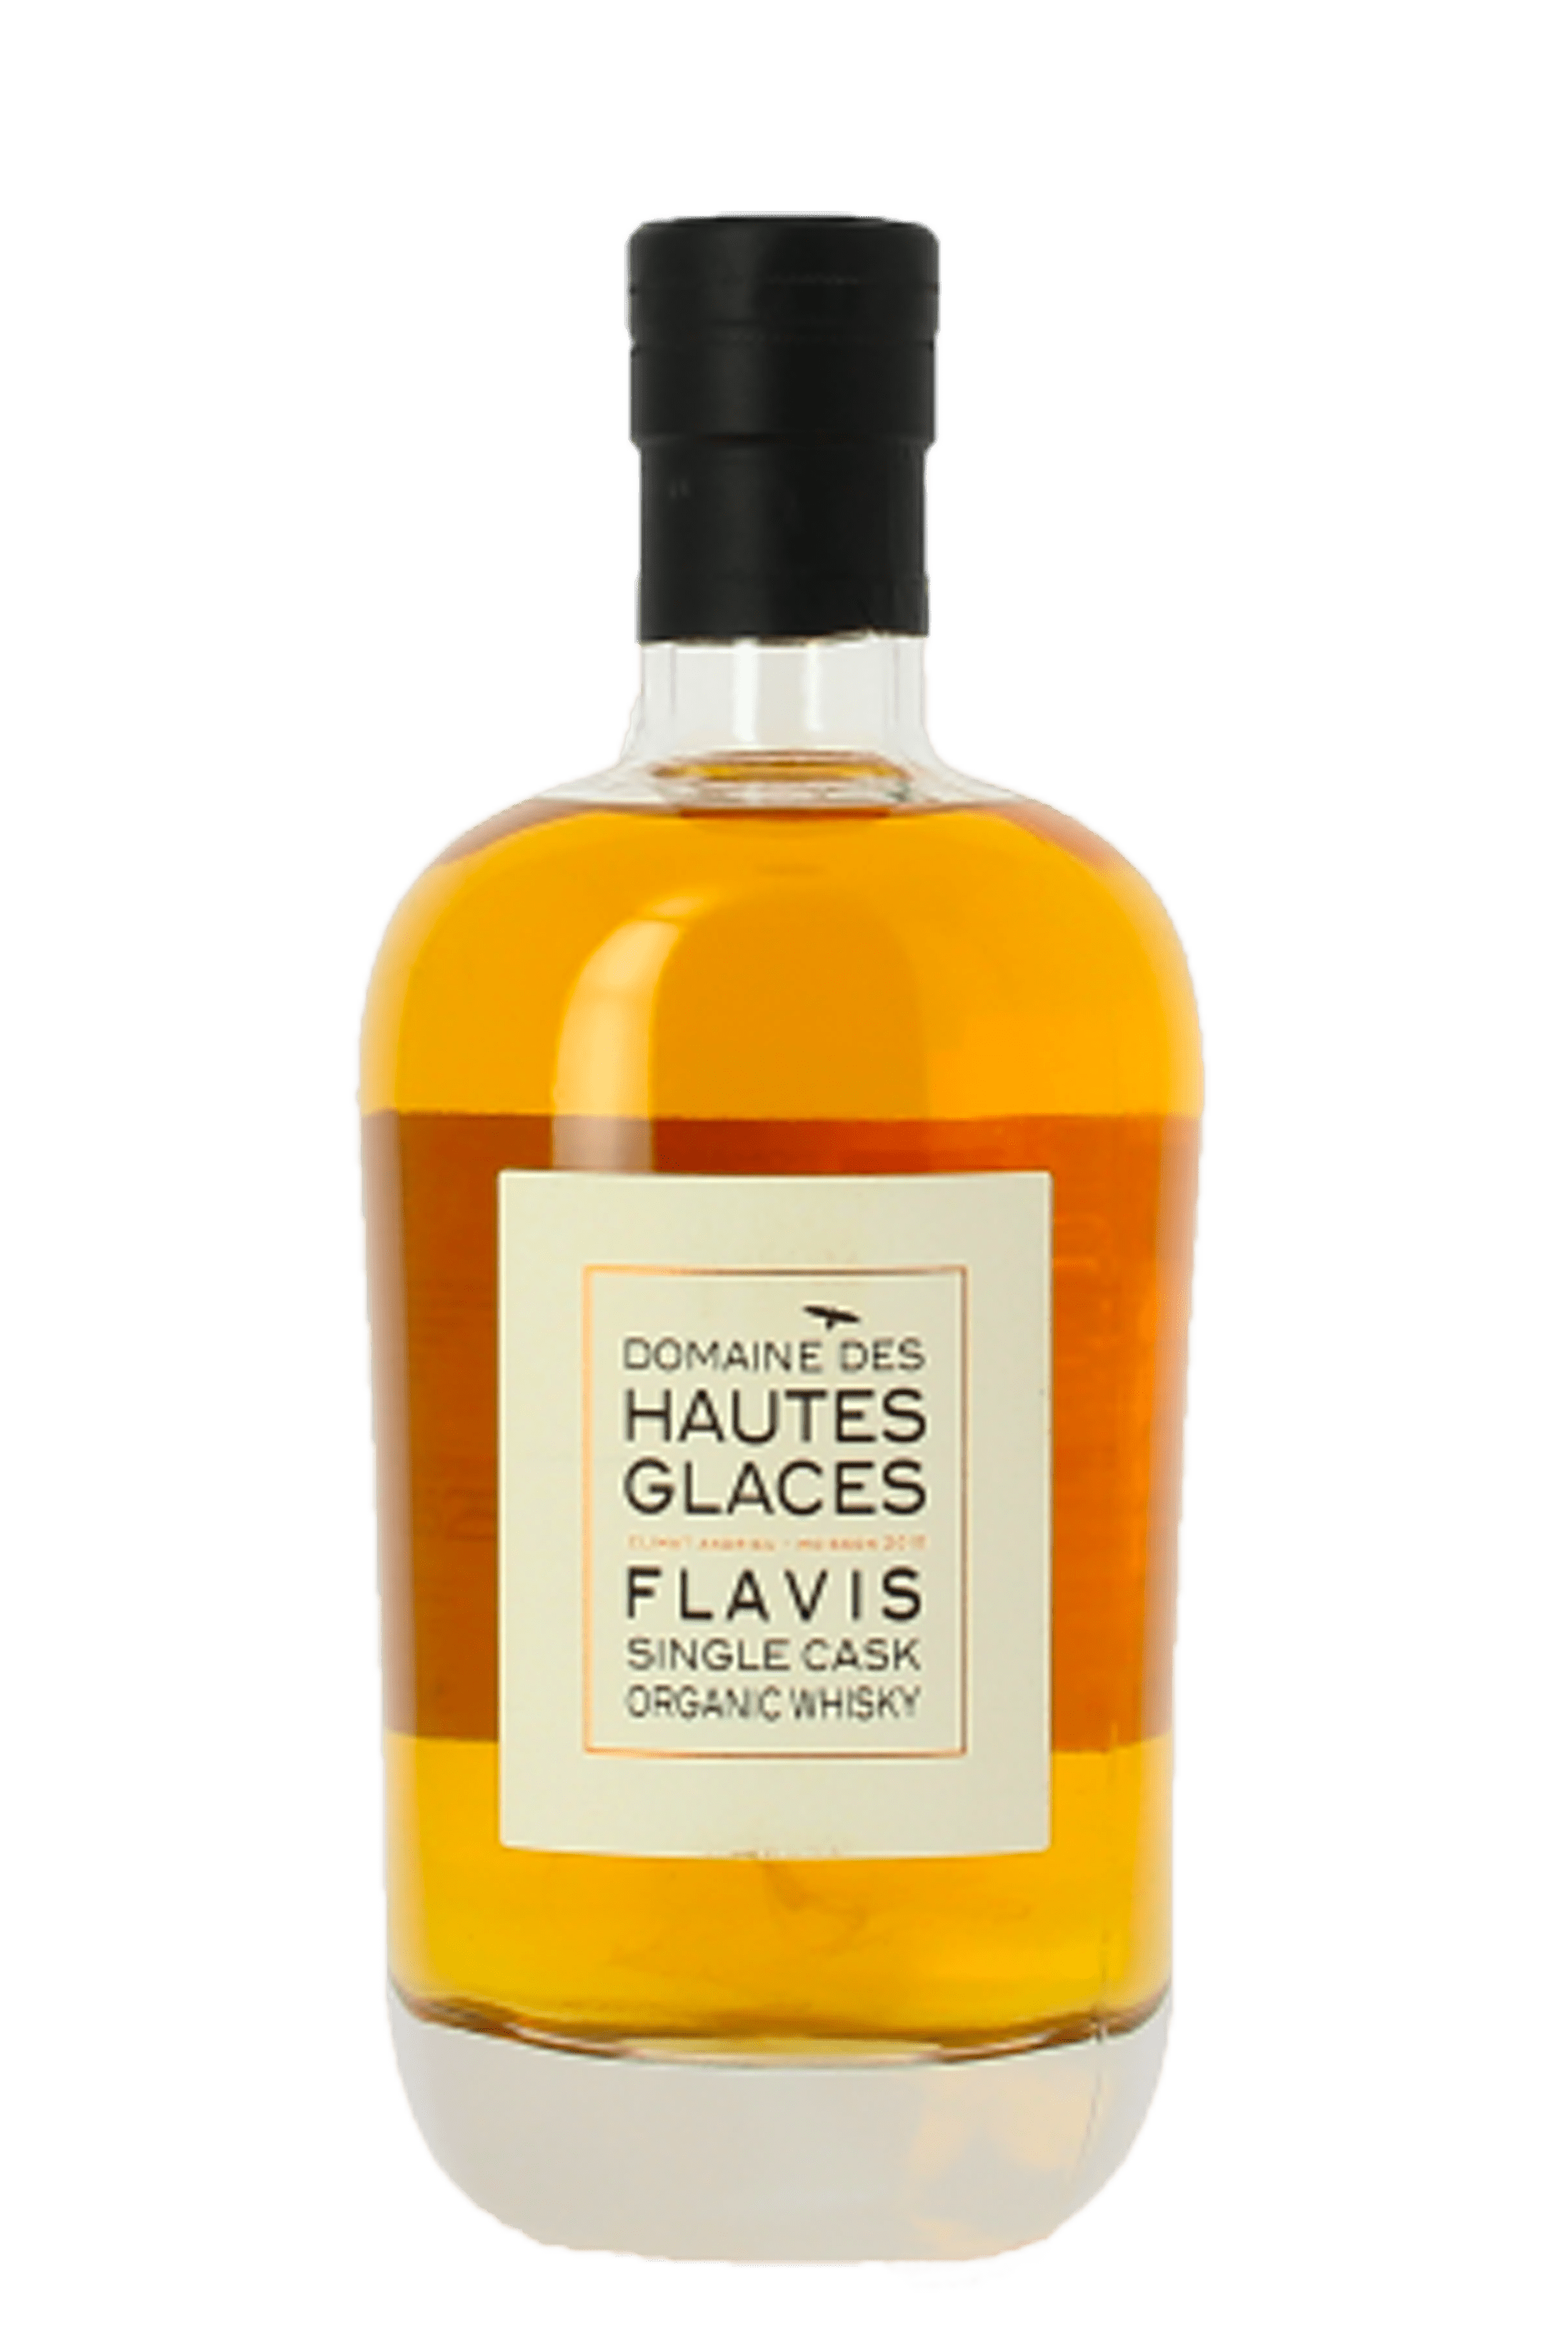 Bouteille de whisky français Flavis du Domaine des hautes glaces